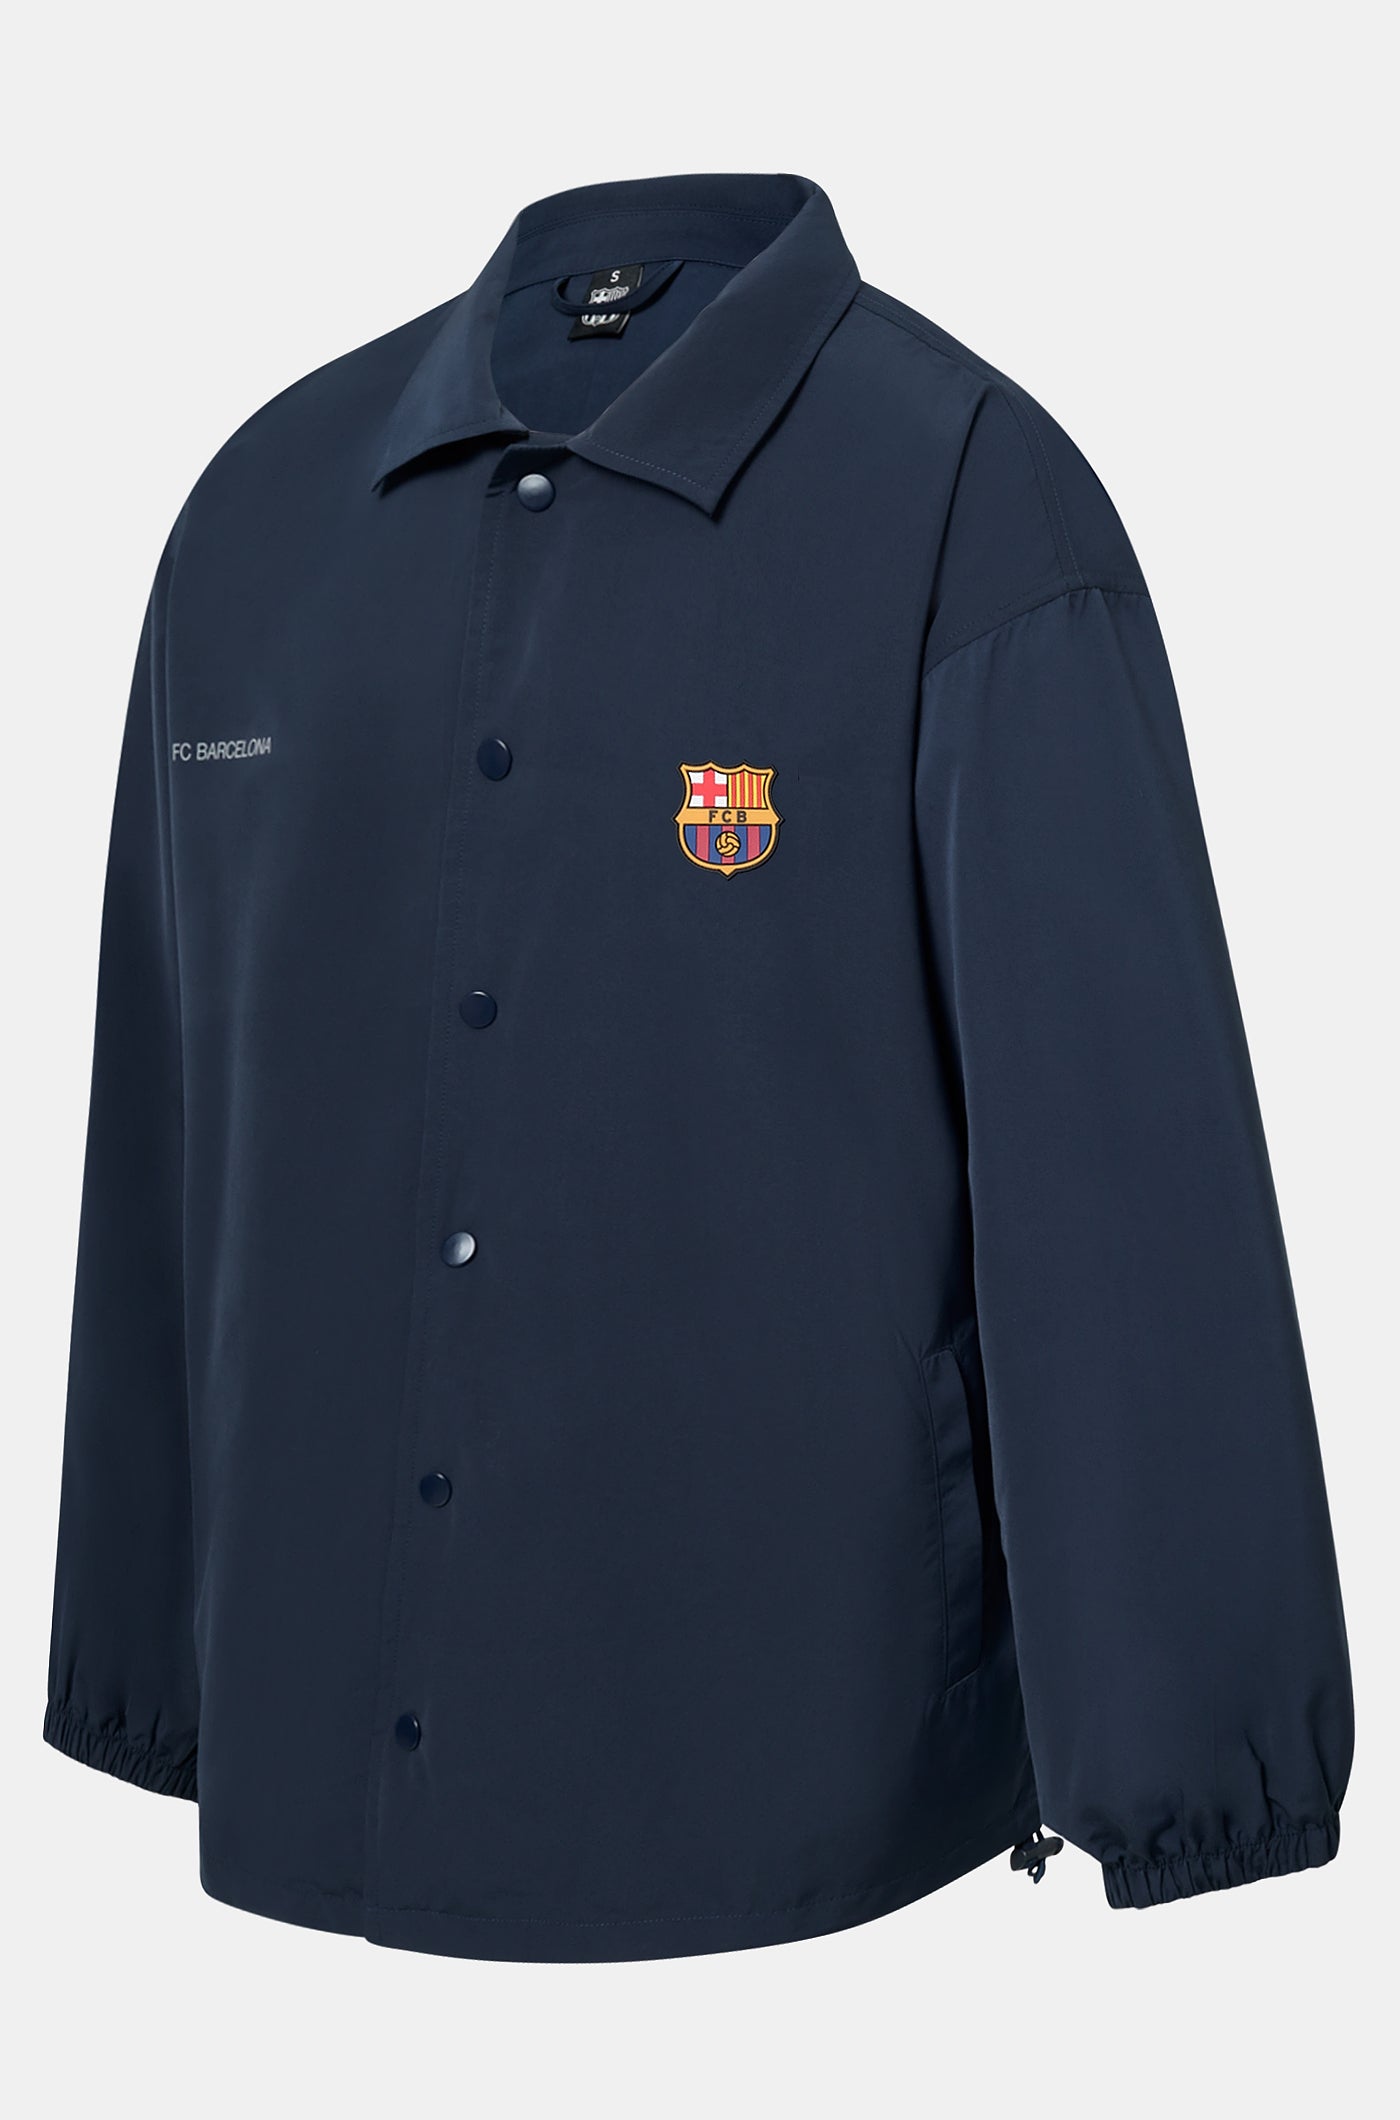 Geknöpfte Jacke des FC Barcelona - Damen